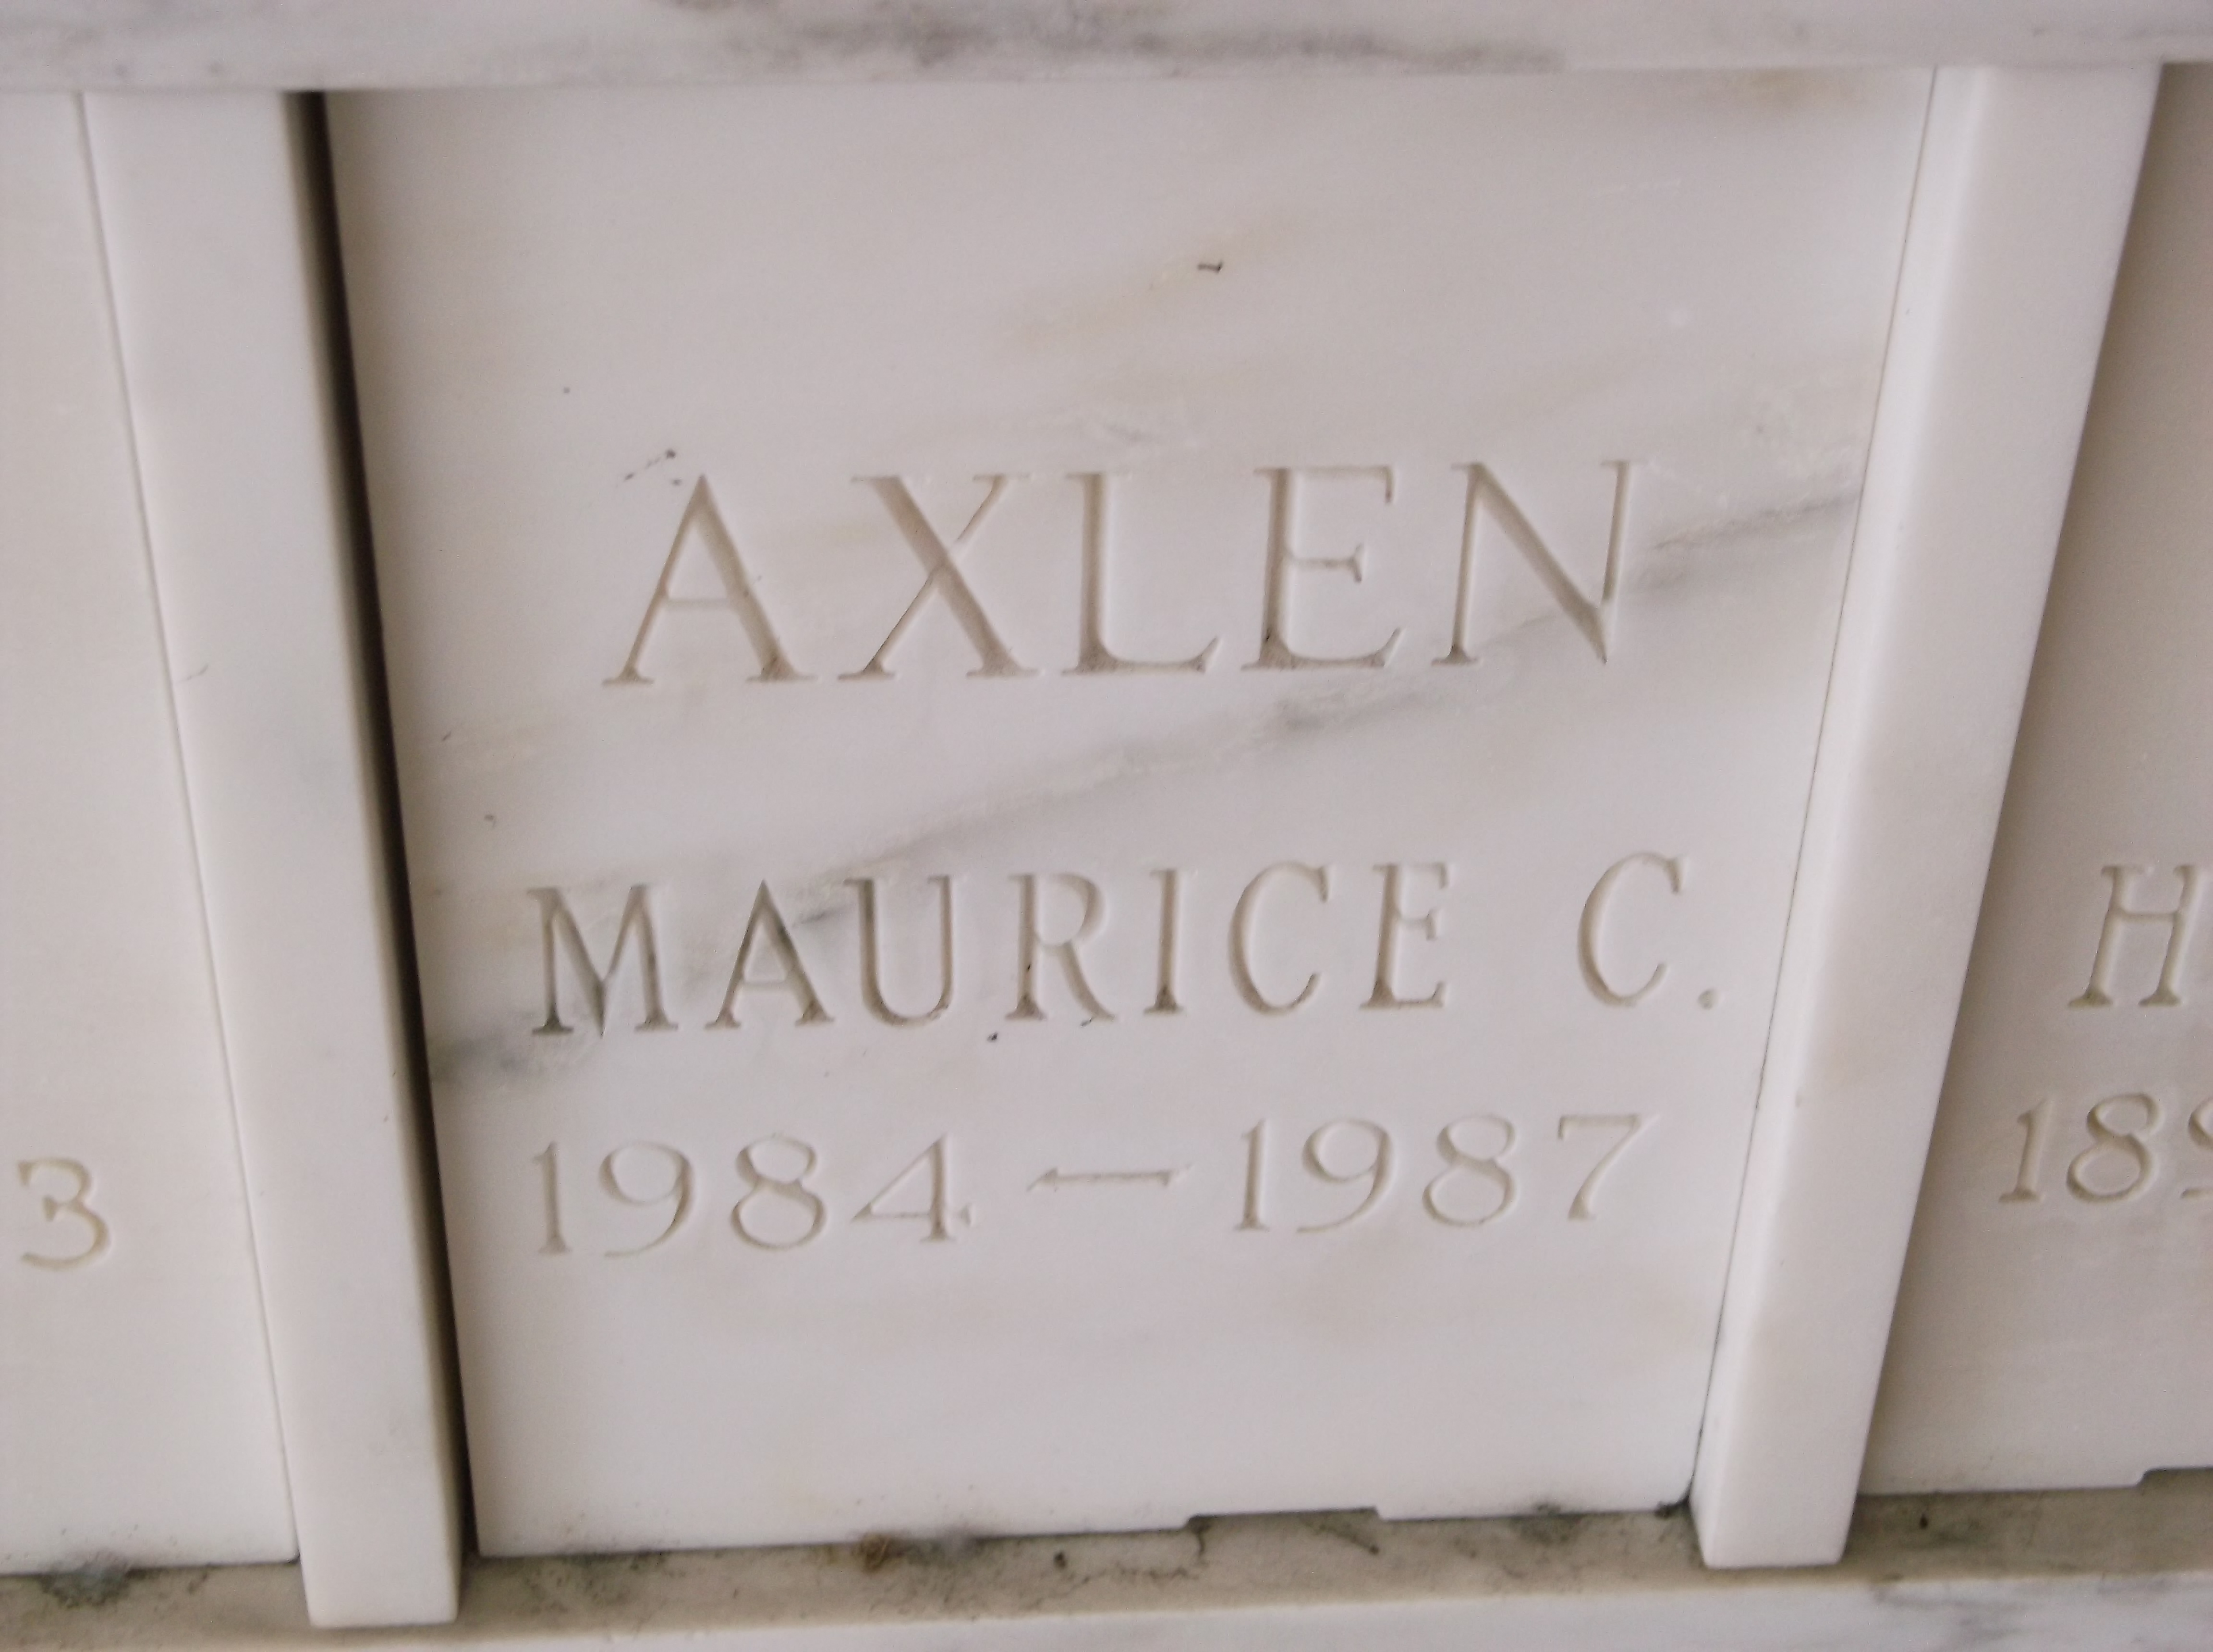 Maurice C Axlen